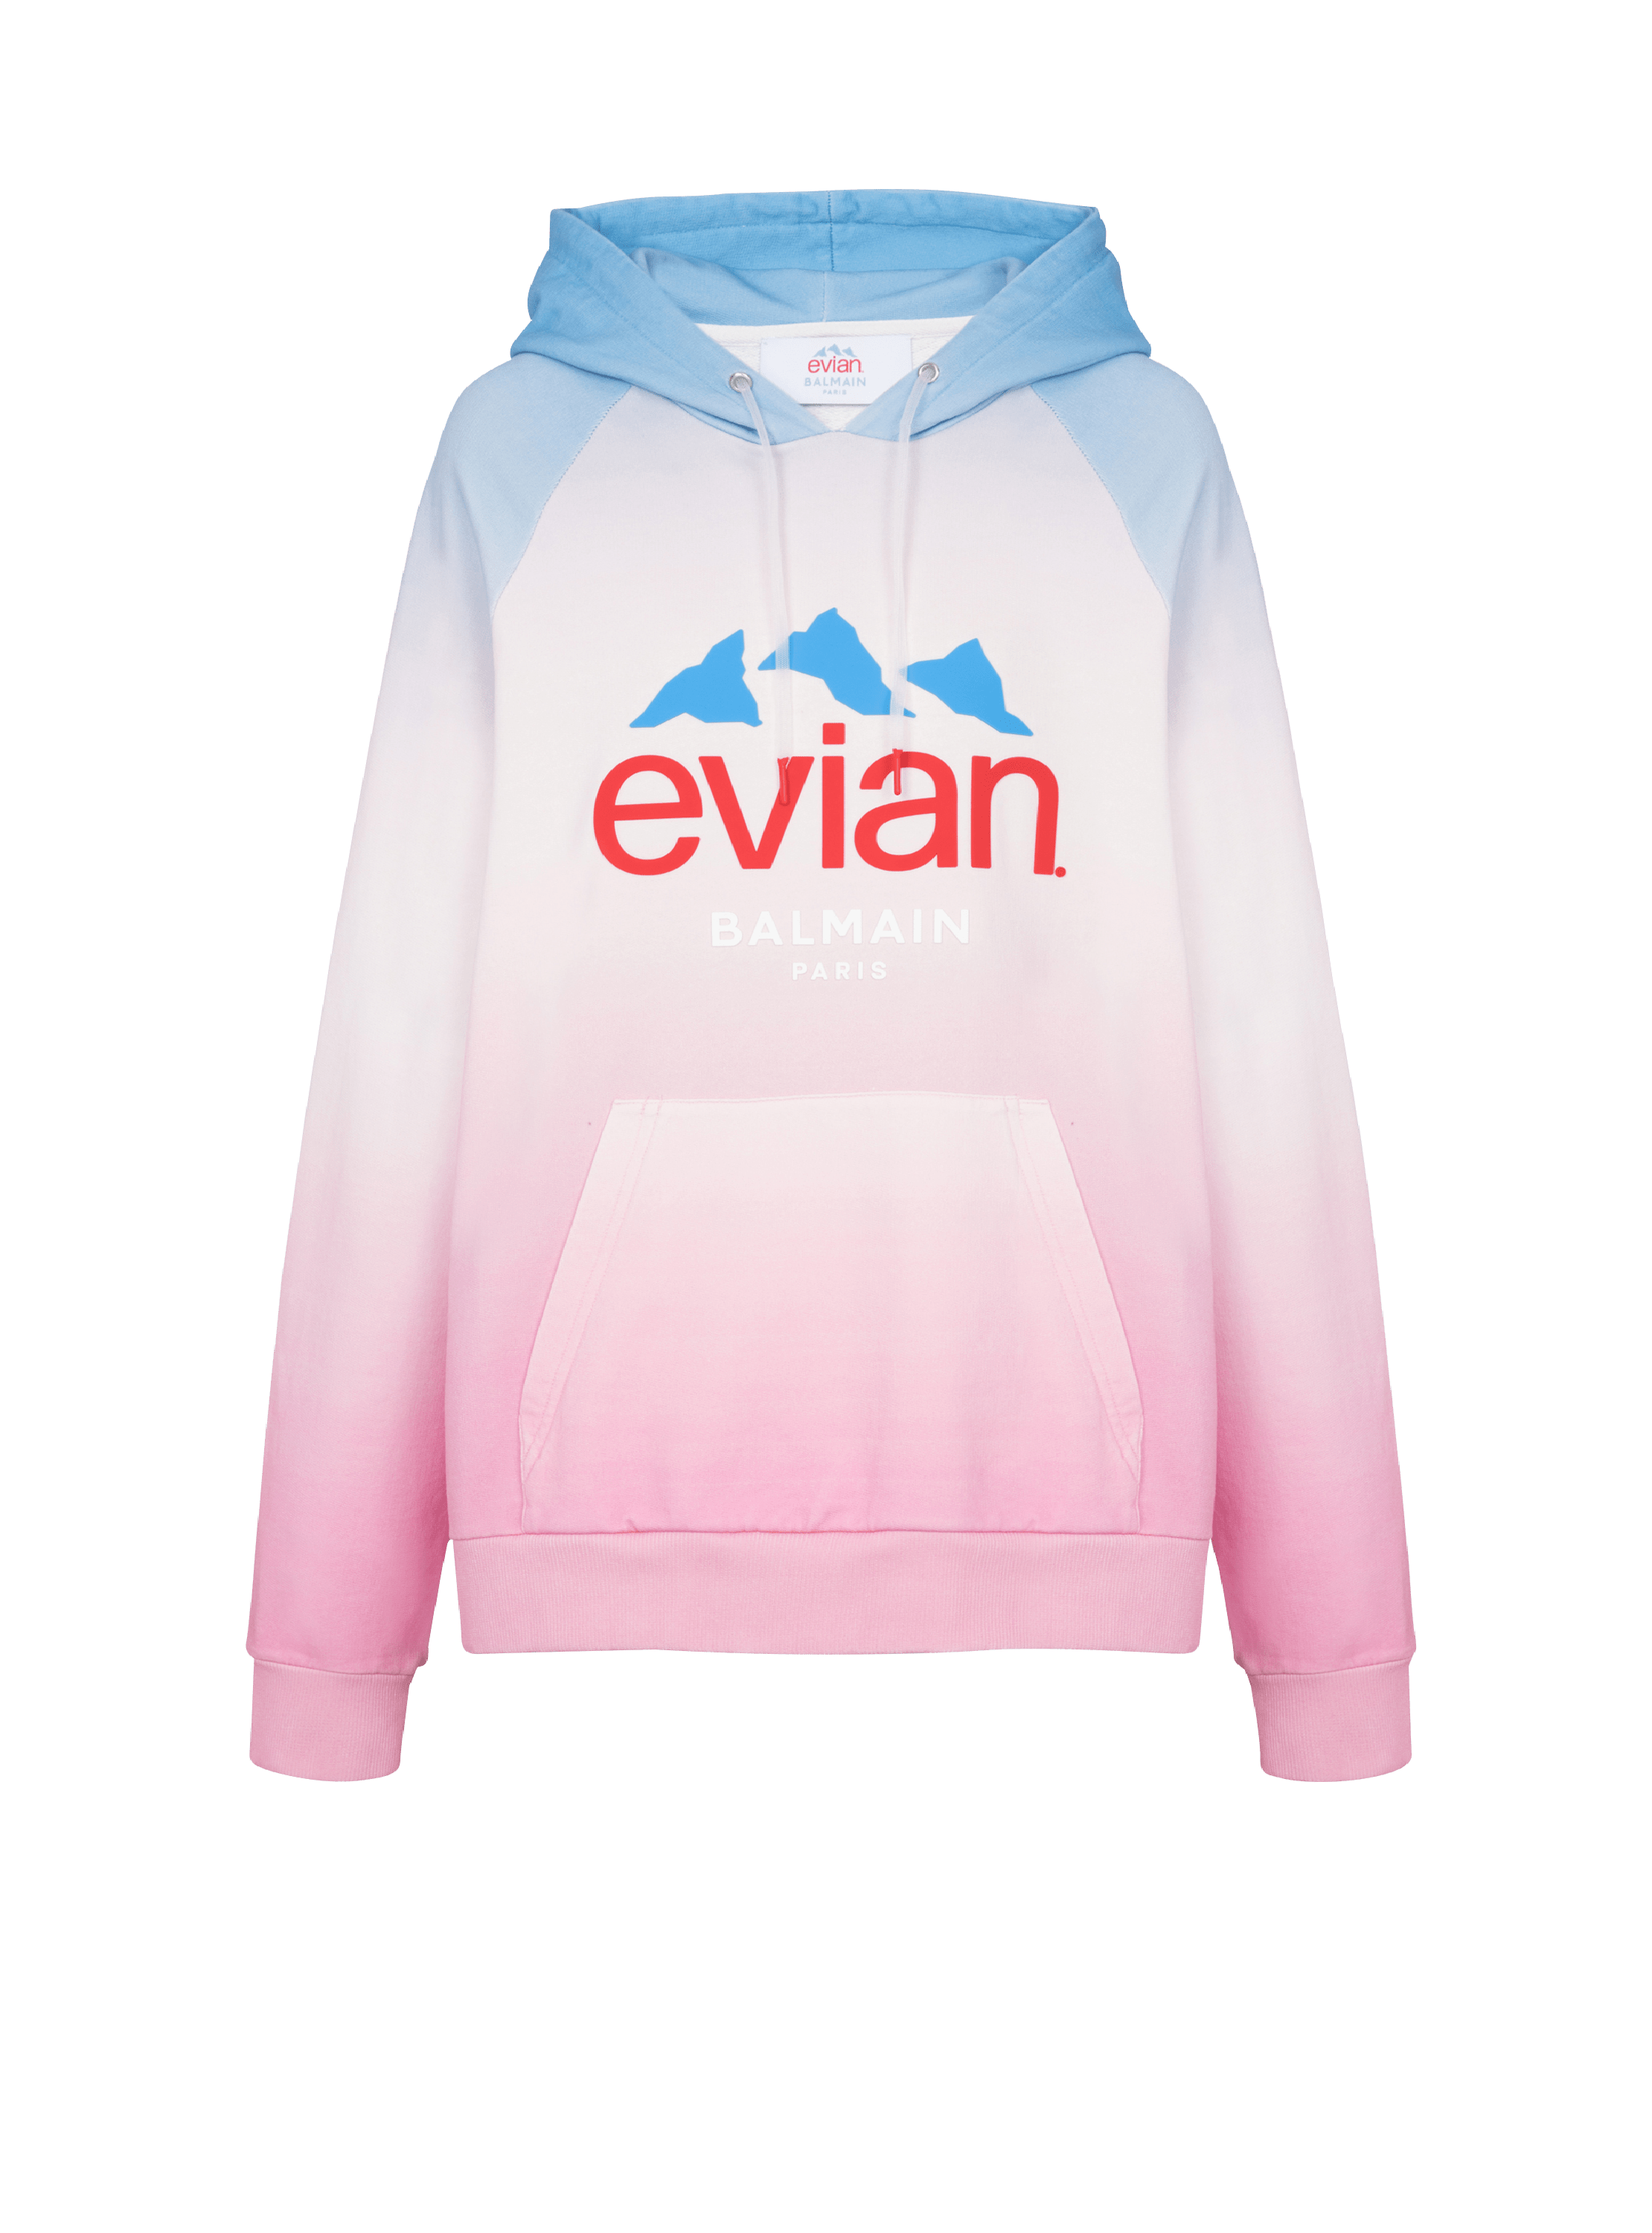 Balmain x Evian - Sweatshirt mit Farbverlauf